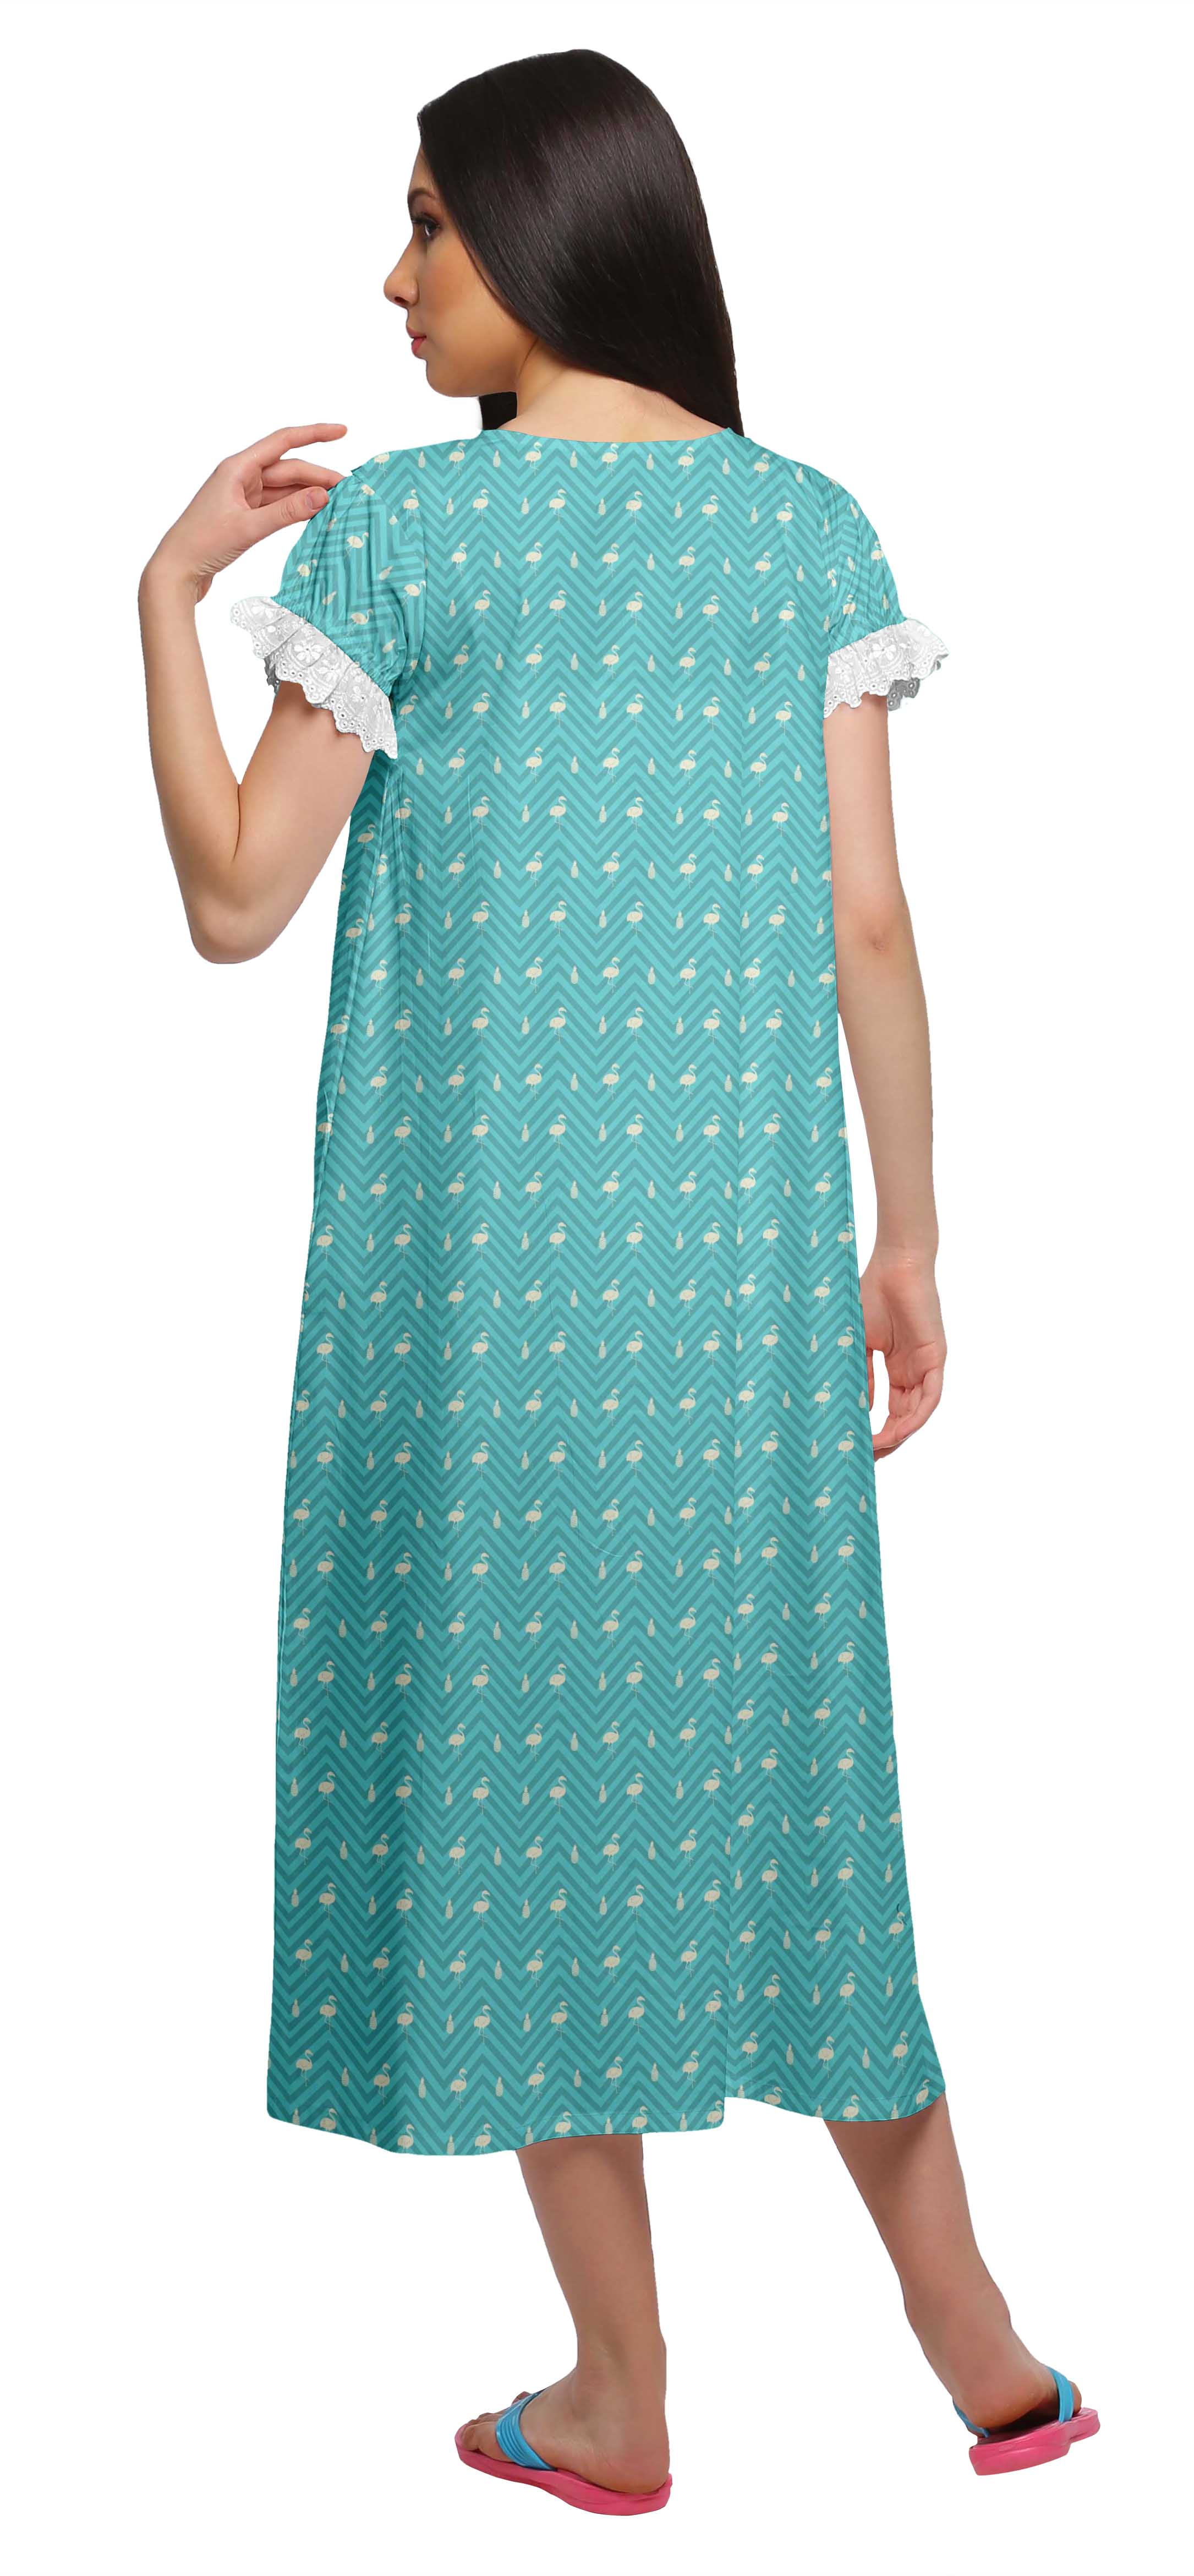 Details about   Moomaya Printed Women's Nightwear Short Sleeve Sleepwear Nightdress-FL-539F 